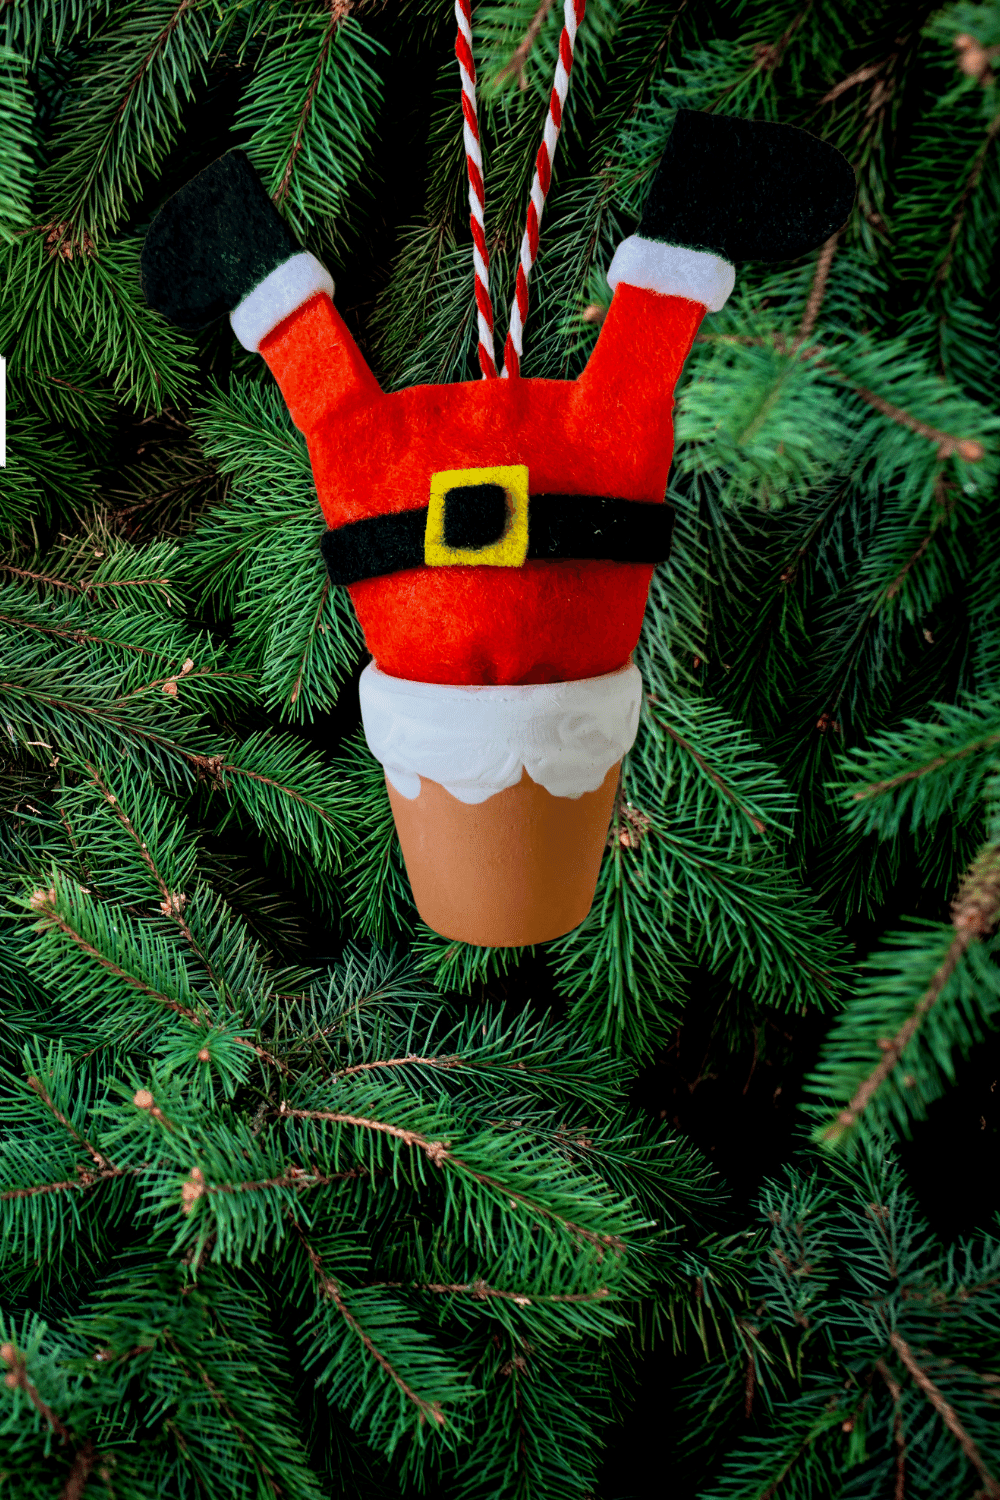 DIY Felt Santa Tree Ornament